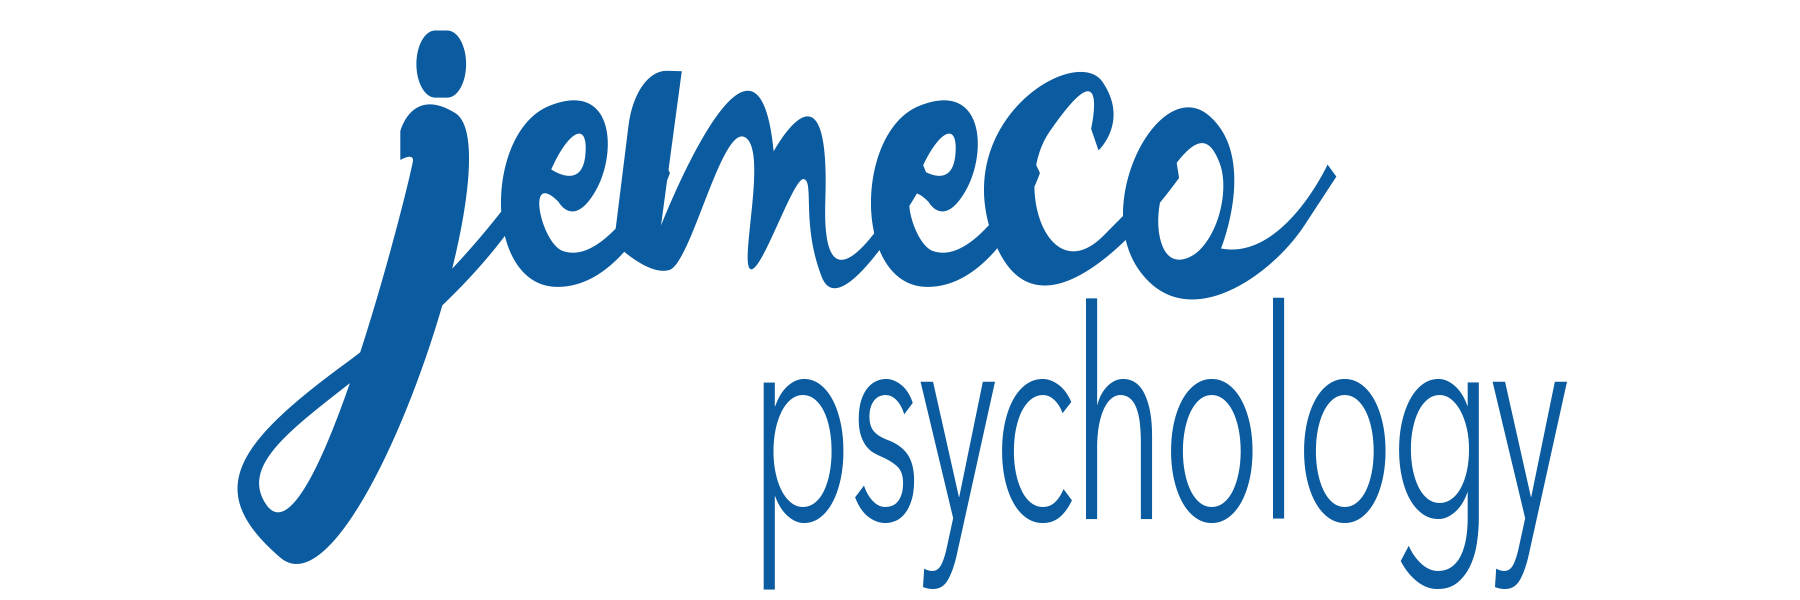 jemeco psychology